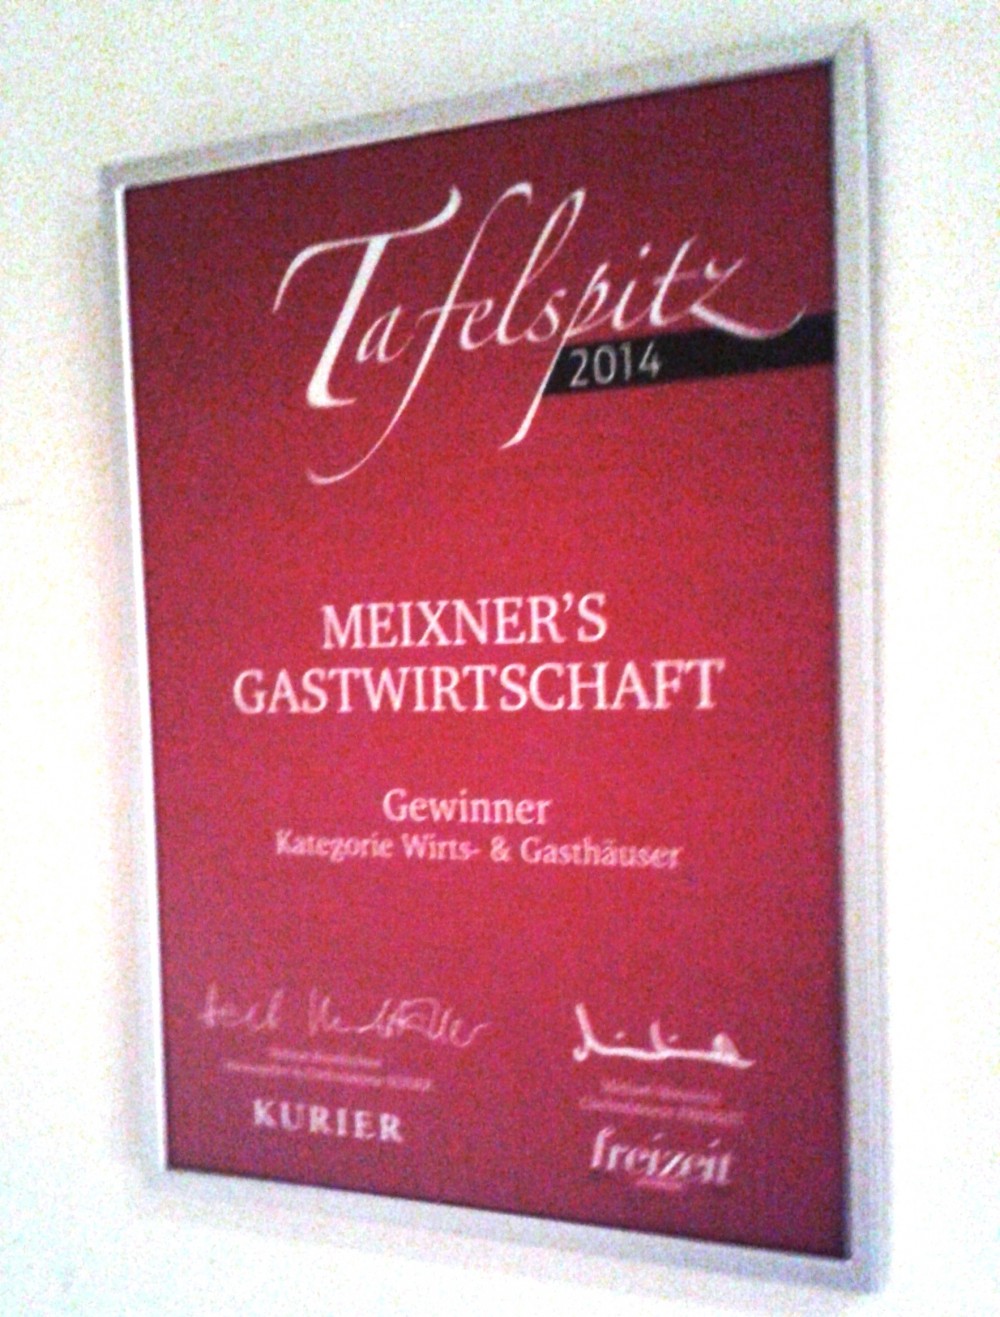 Meixner - Tafelspitz-Auszeichnung - Meixner's Gastwirtschaft - Wien